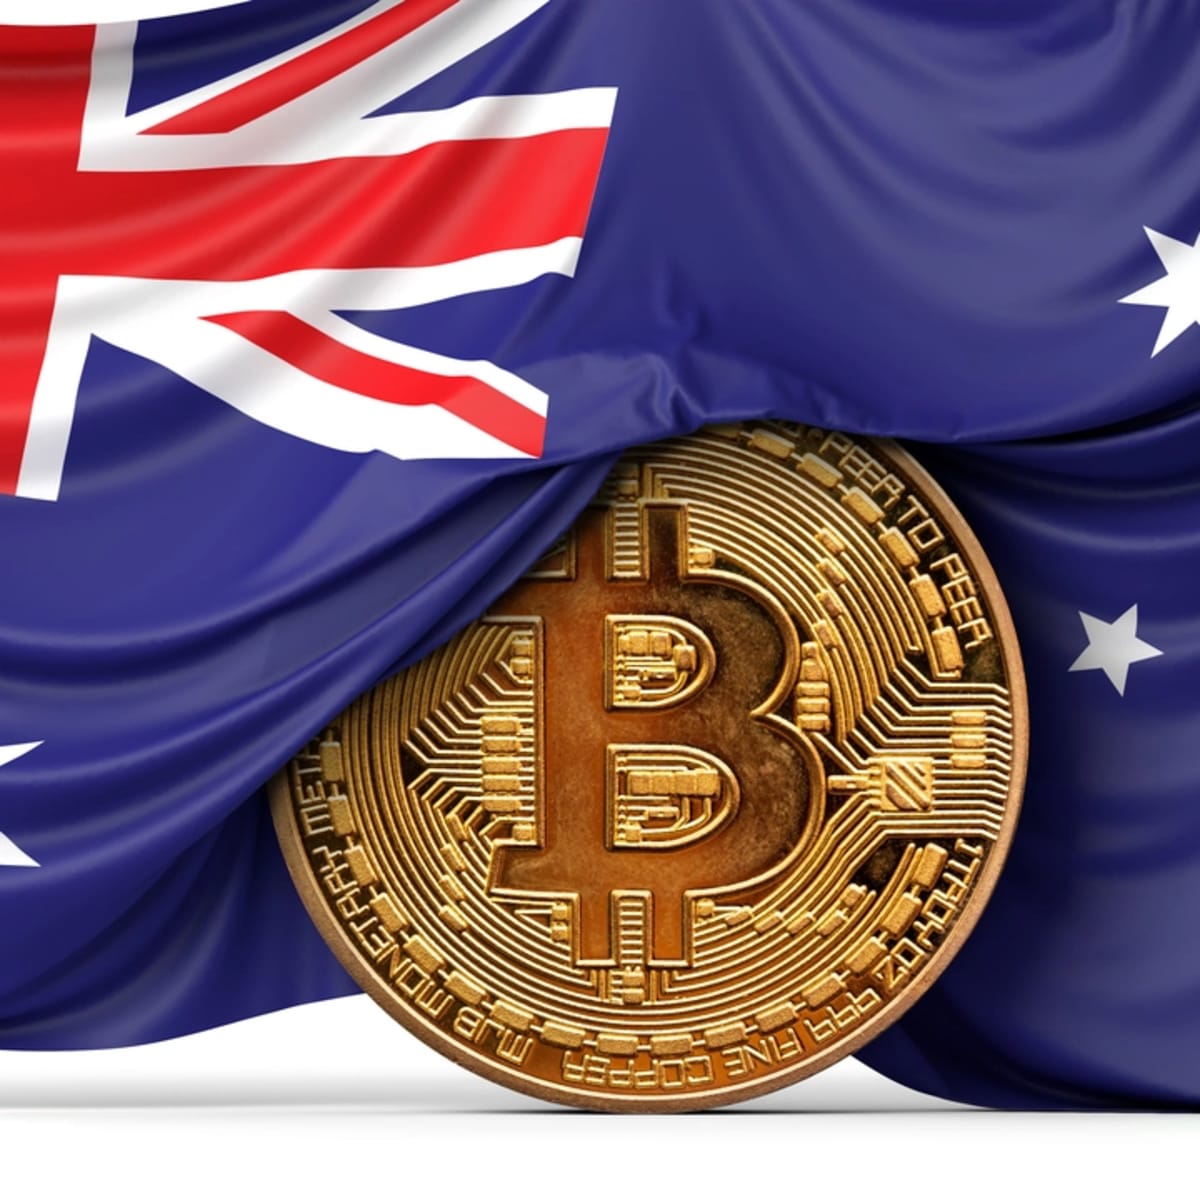 Australia etf bitcoin crypto manny